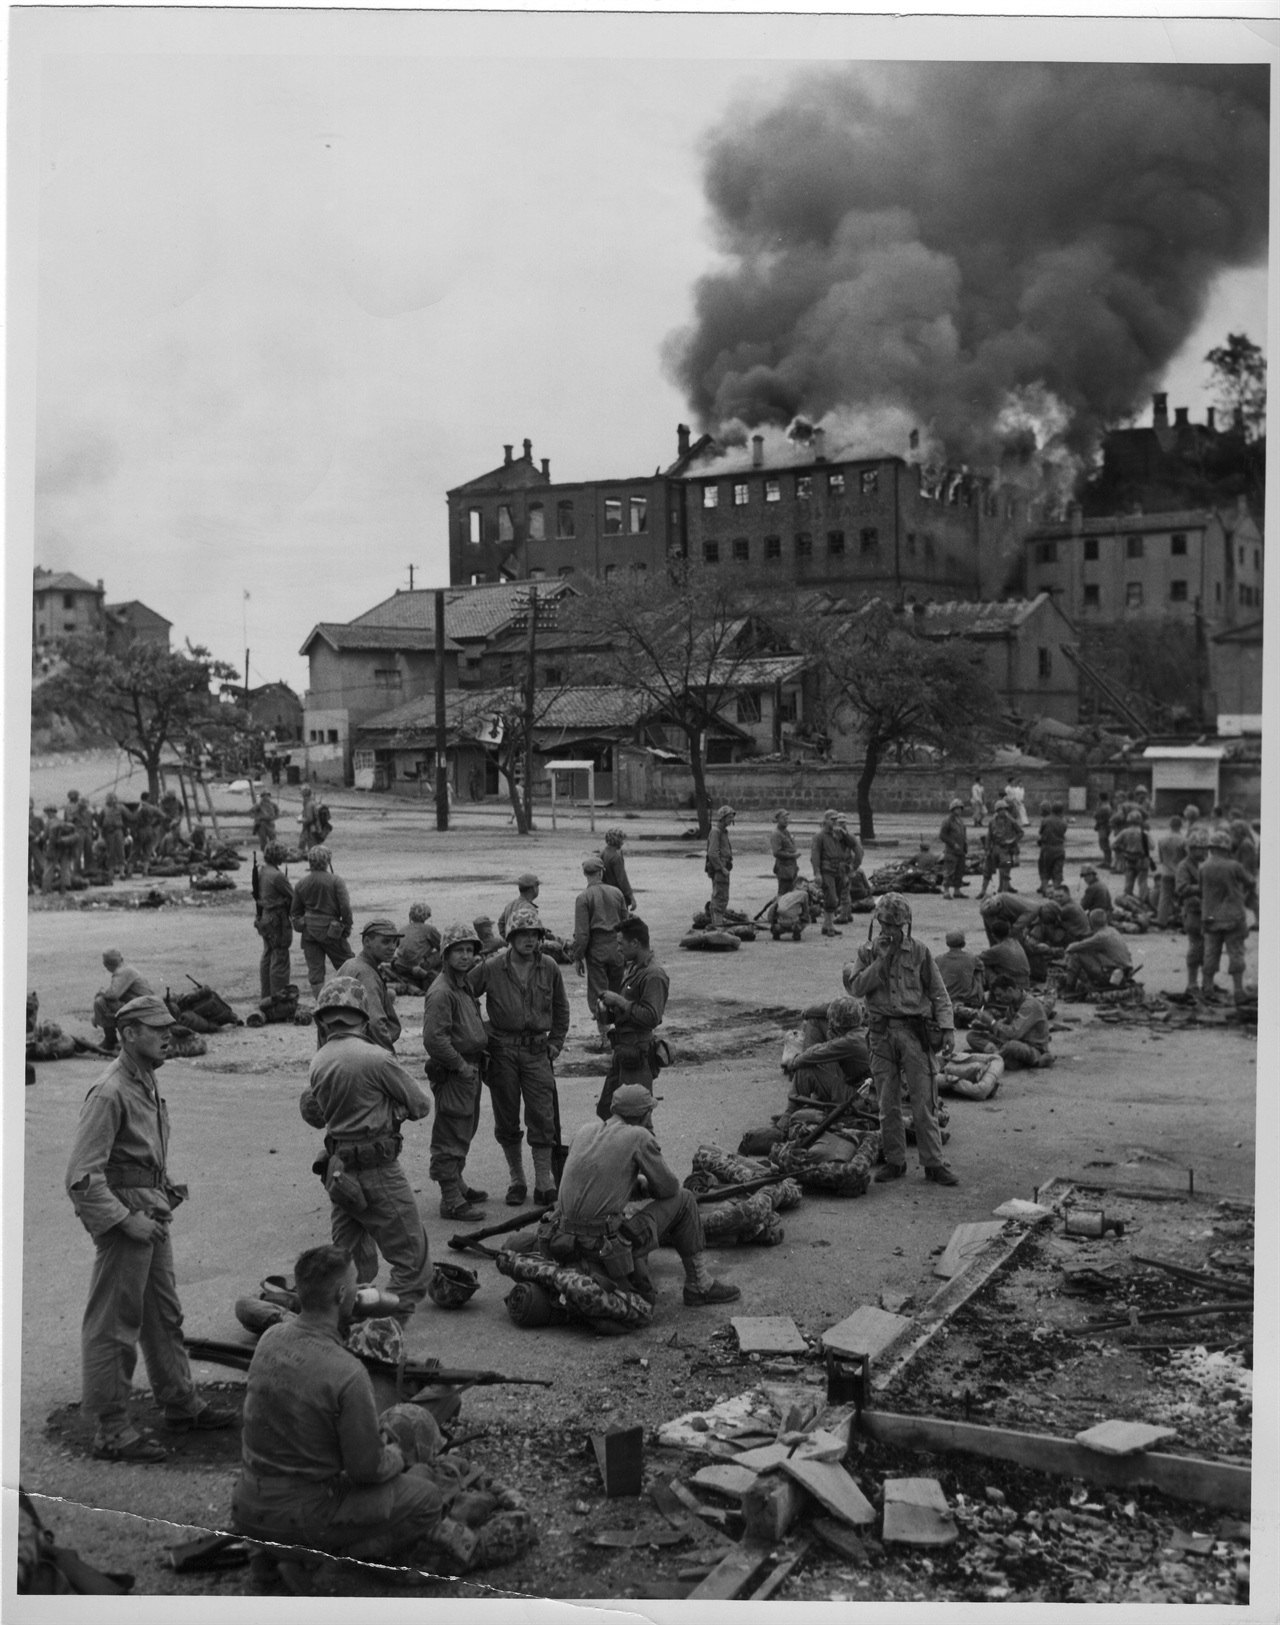   1950. 9. 16.  포격으로 불타고 있는 인천시가지에서 미군들이 잠시 휴식을 취하고 있다.